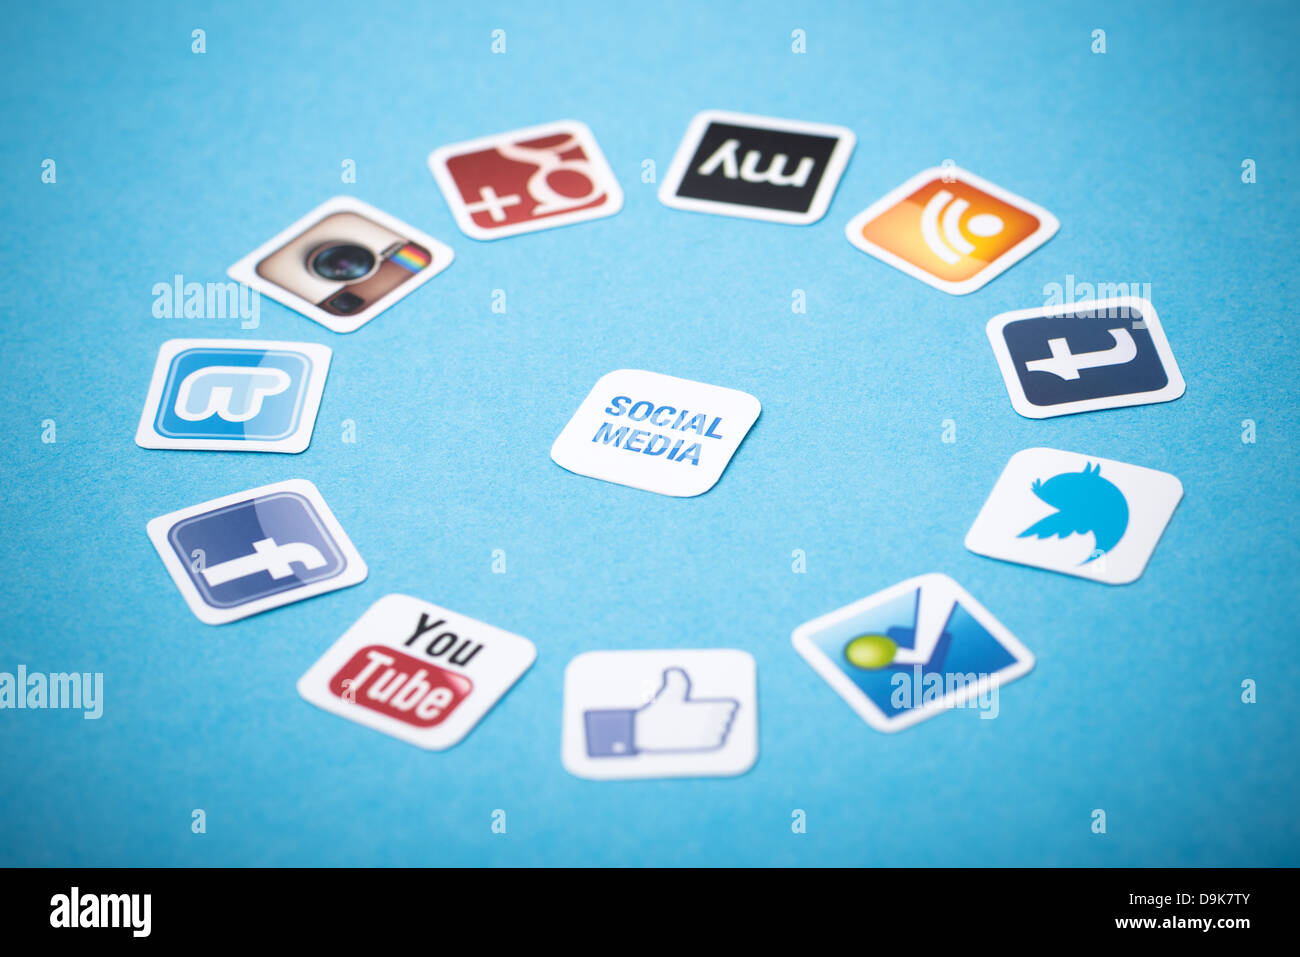 Eine Logo-Sammlung von bekannten social-Media-Marken auf Papier gedruckt und um auf blauem Hintergrund gelegt. Stockfoto